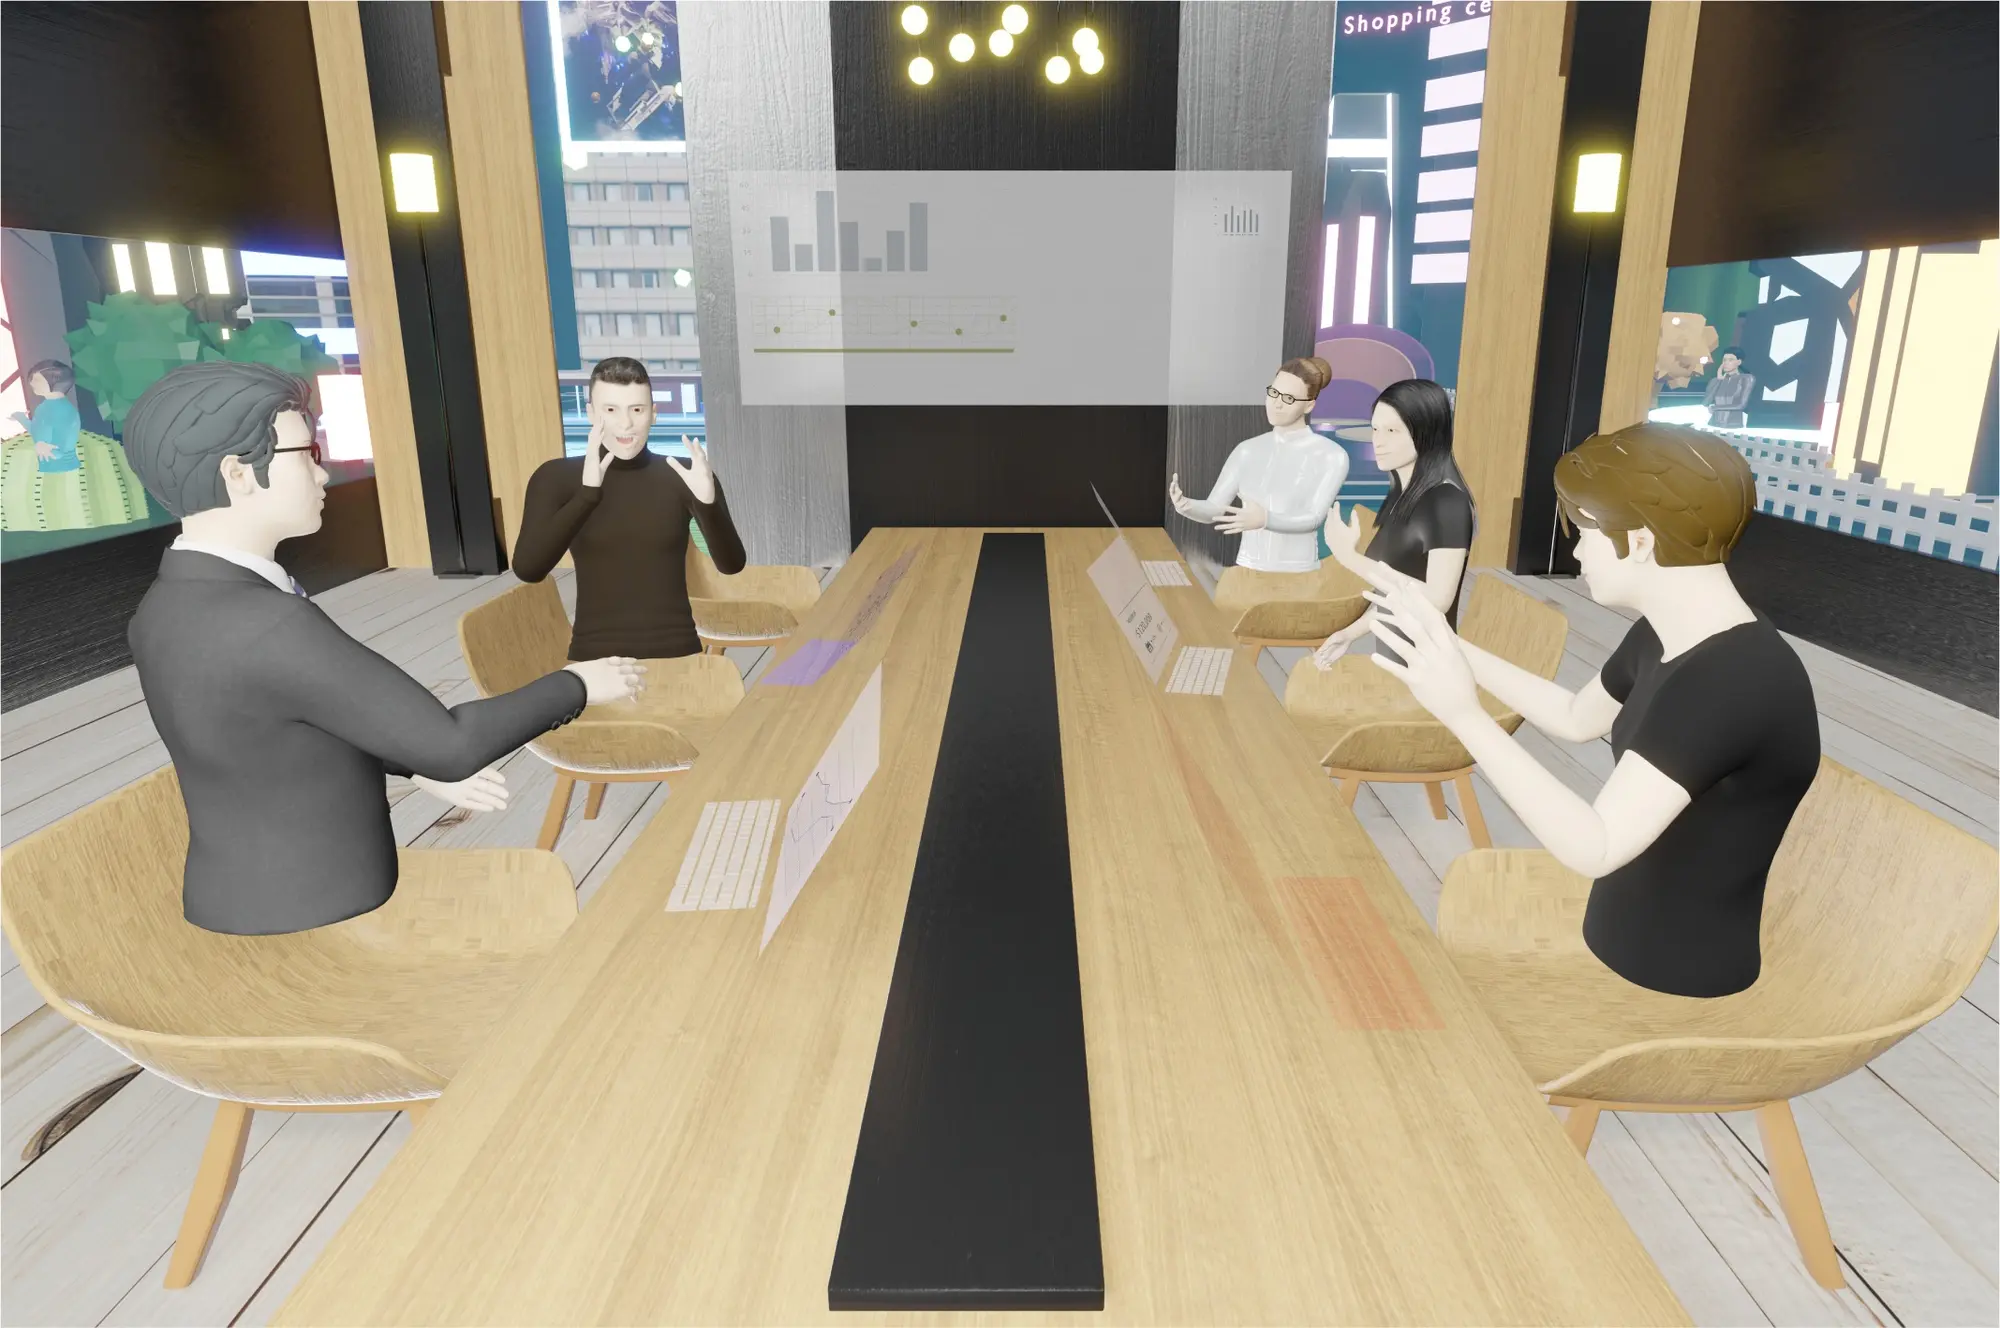 Imagem 3D de uma cena em uma sala de reuniões 5 pessoas conversando